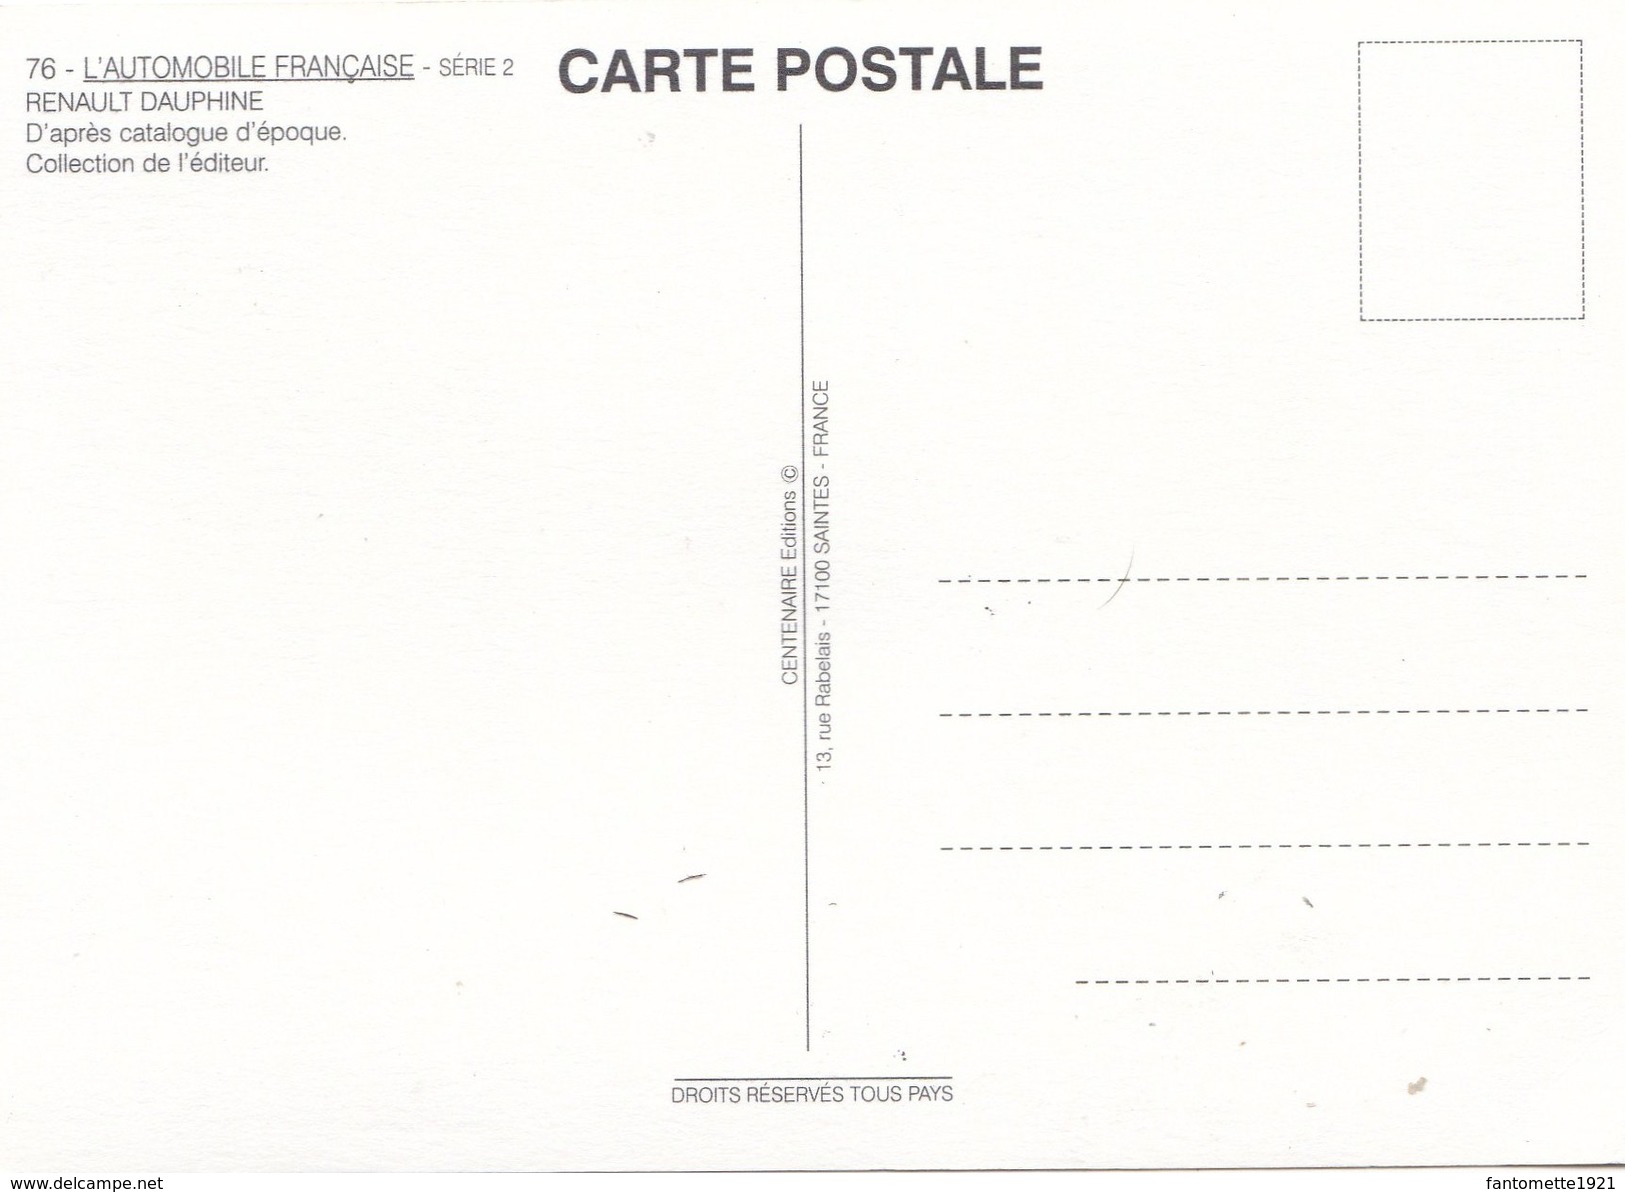 RENAULT DAUPHINE/L'AUTOMOBILE FRANCAISE SERIE 2 (dil259) - Voitures De Tourisme